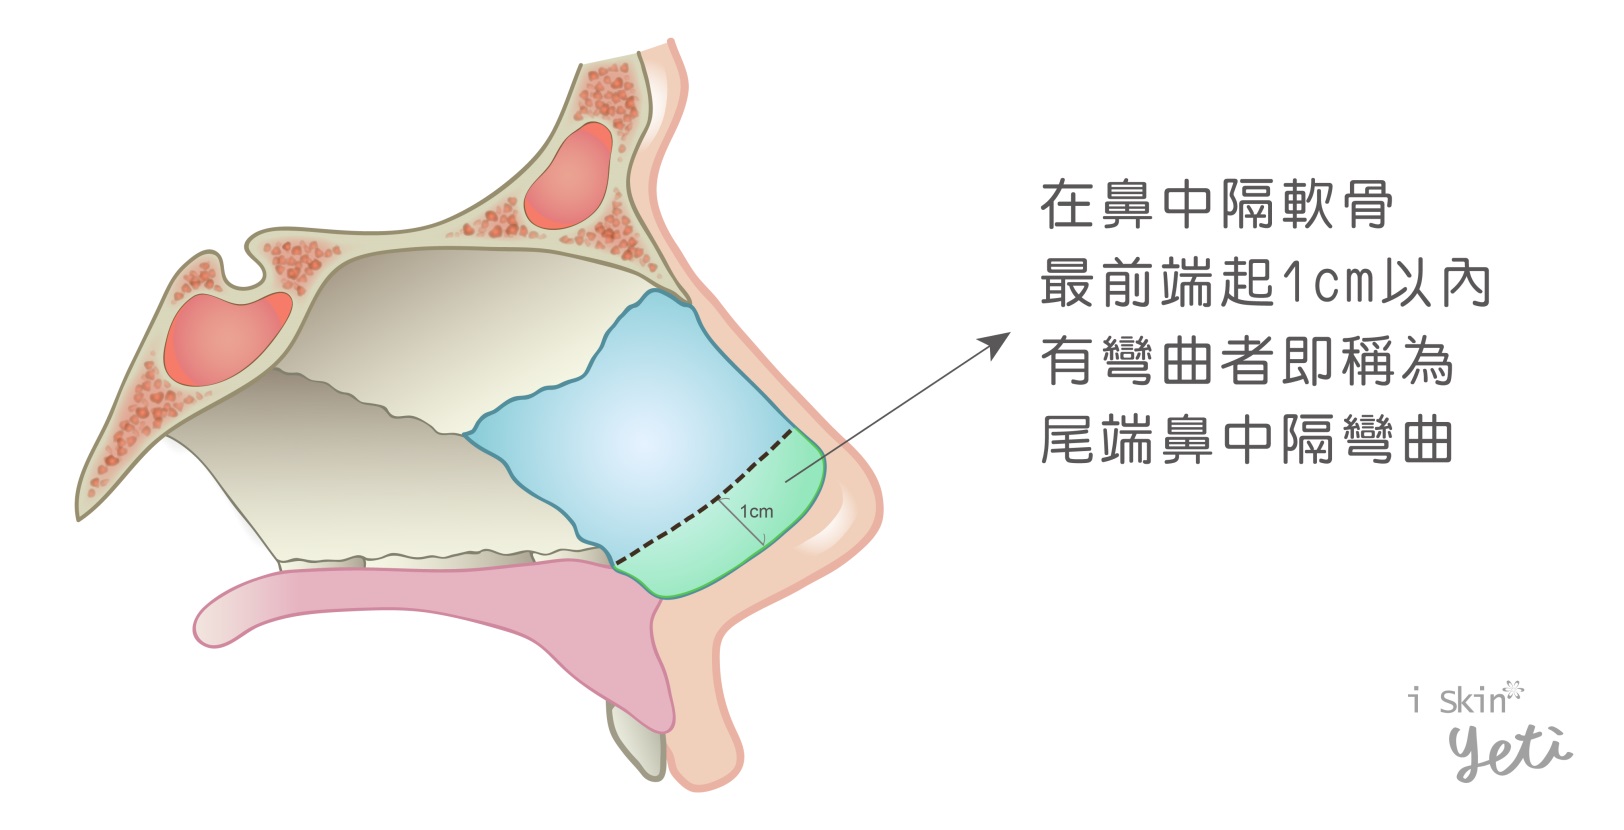 尾端鼻中隔彎曲圖示，綠色區塊為尾端鼻中隔軟骨，若此處有彎曲情況，則稱為尾端鼻中隔彎曲。